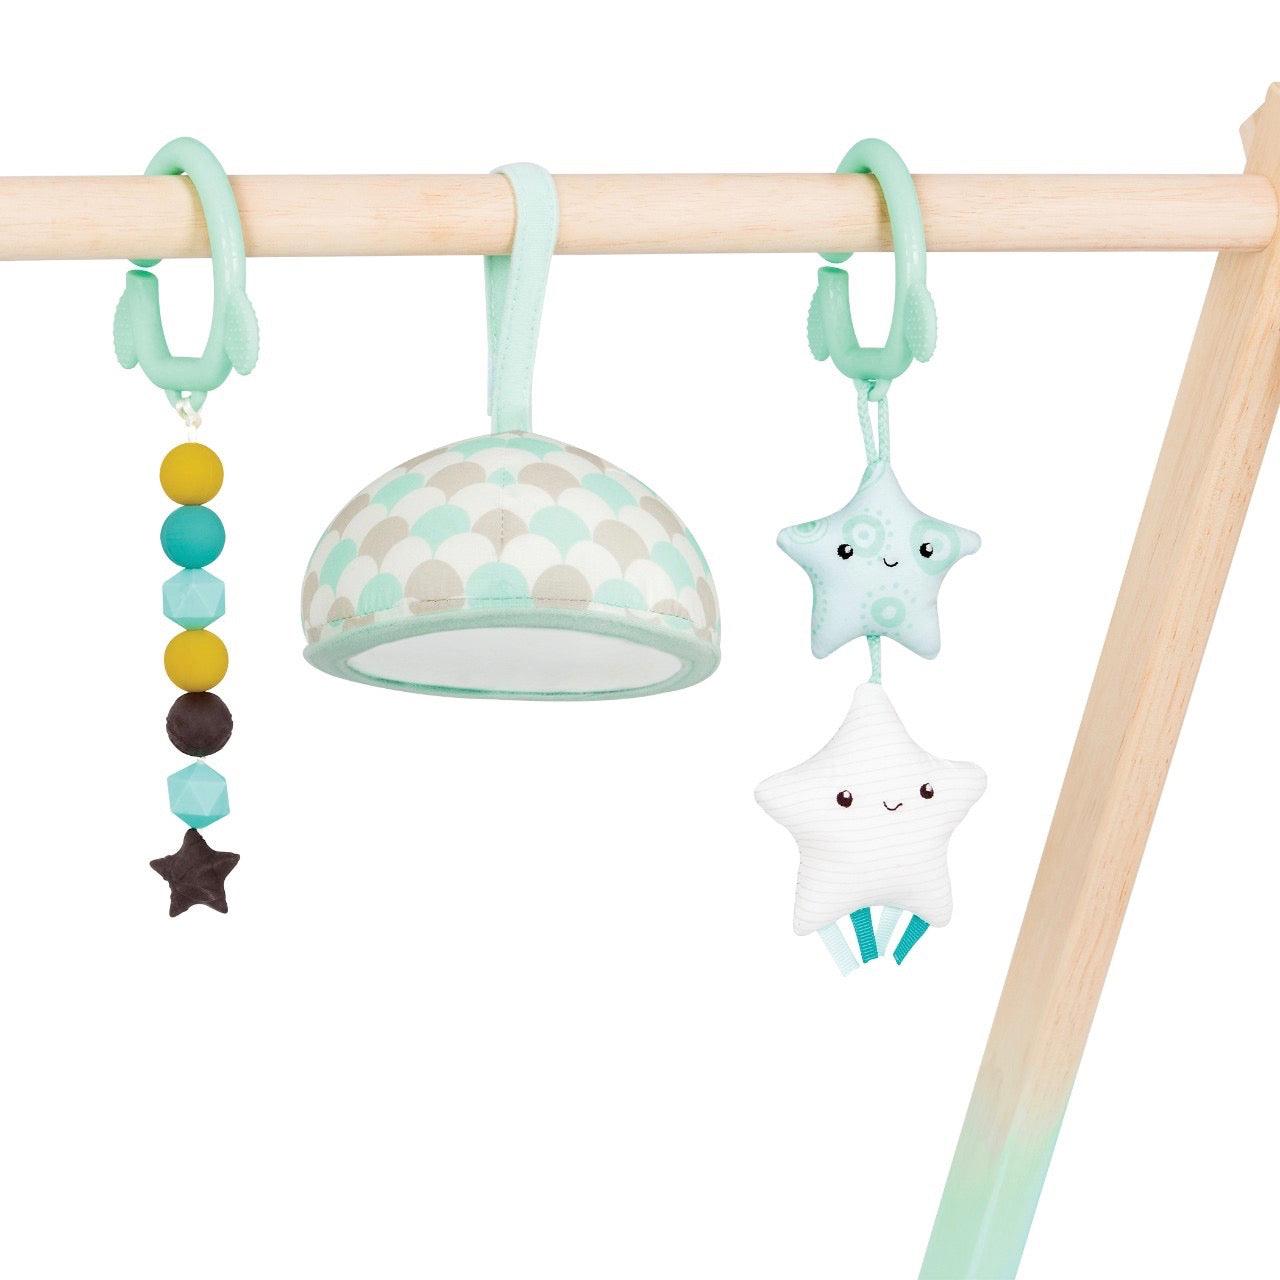 B.Toys: mata aktywnościowa dla niemowląt Starry Sky Baby Gym - Noski Noski